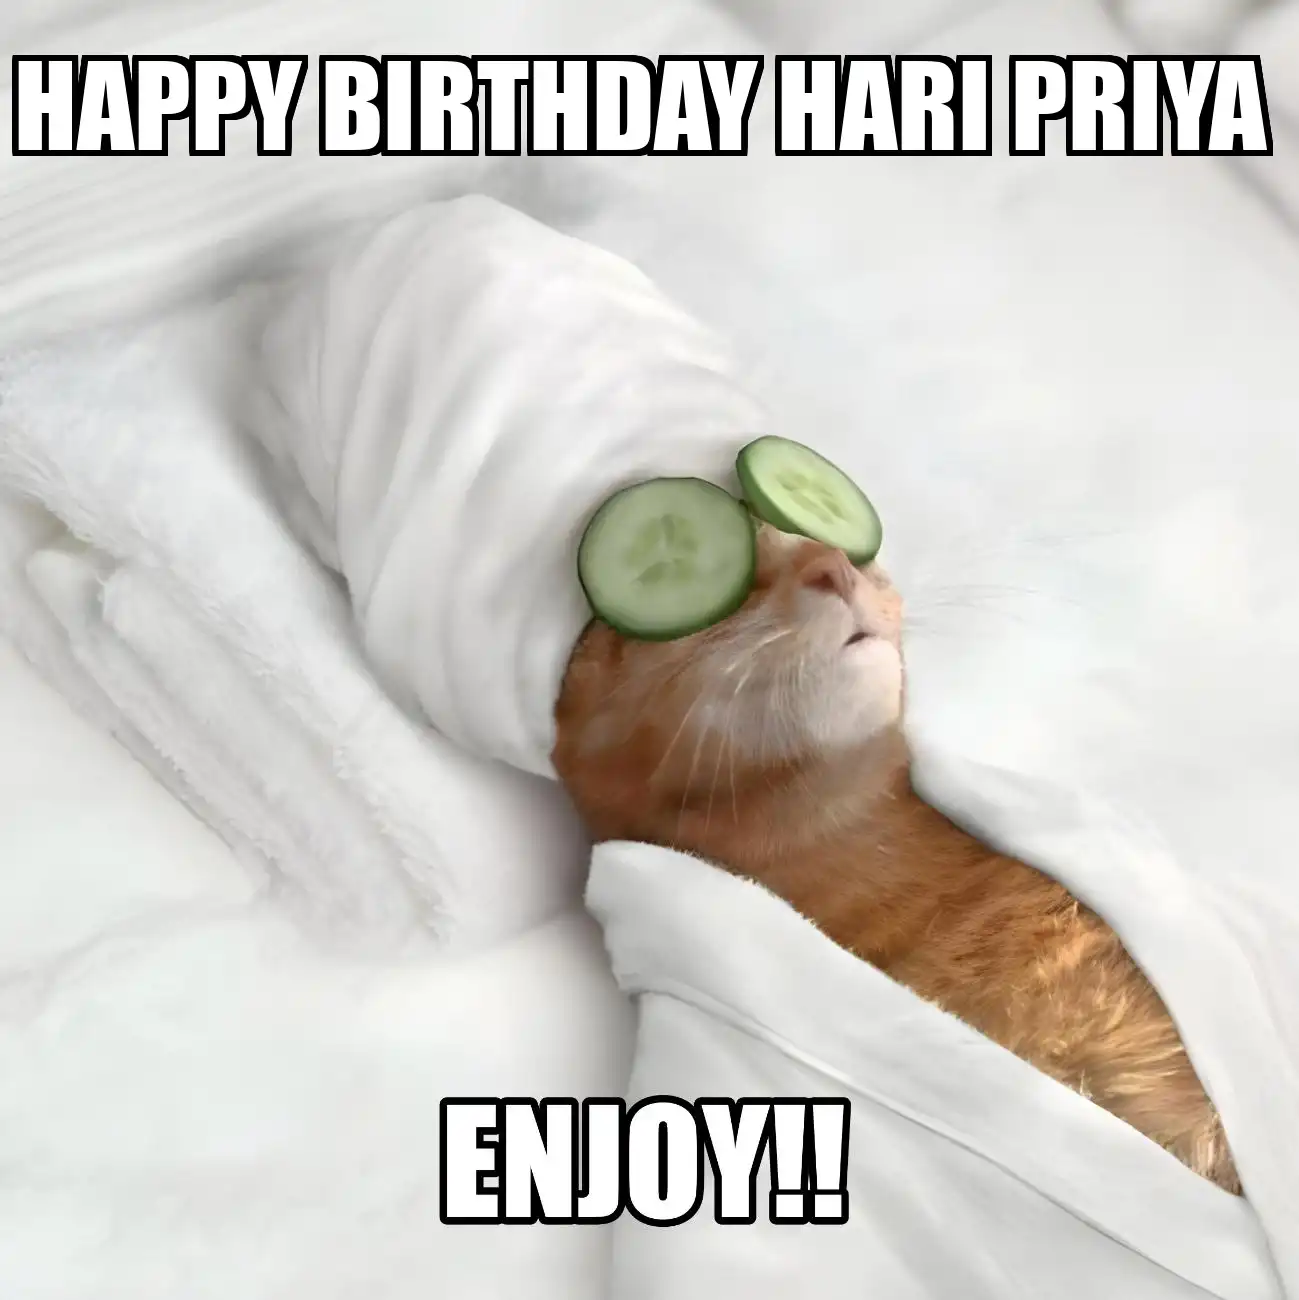 Happy Birthday Hari Priya Enjoy Cat Meme